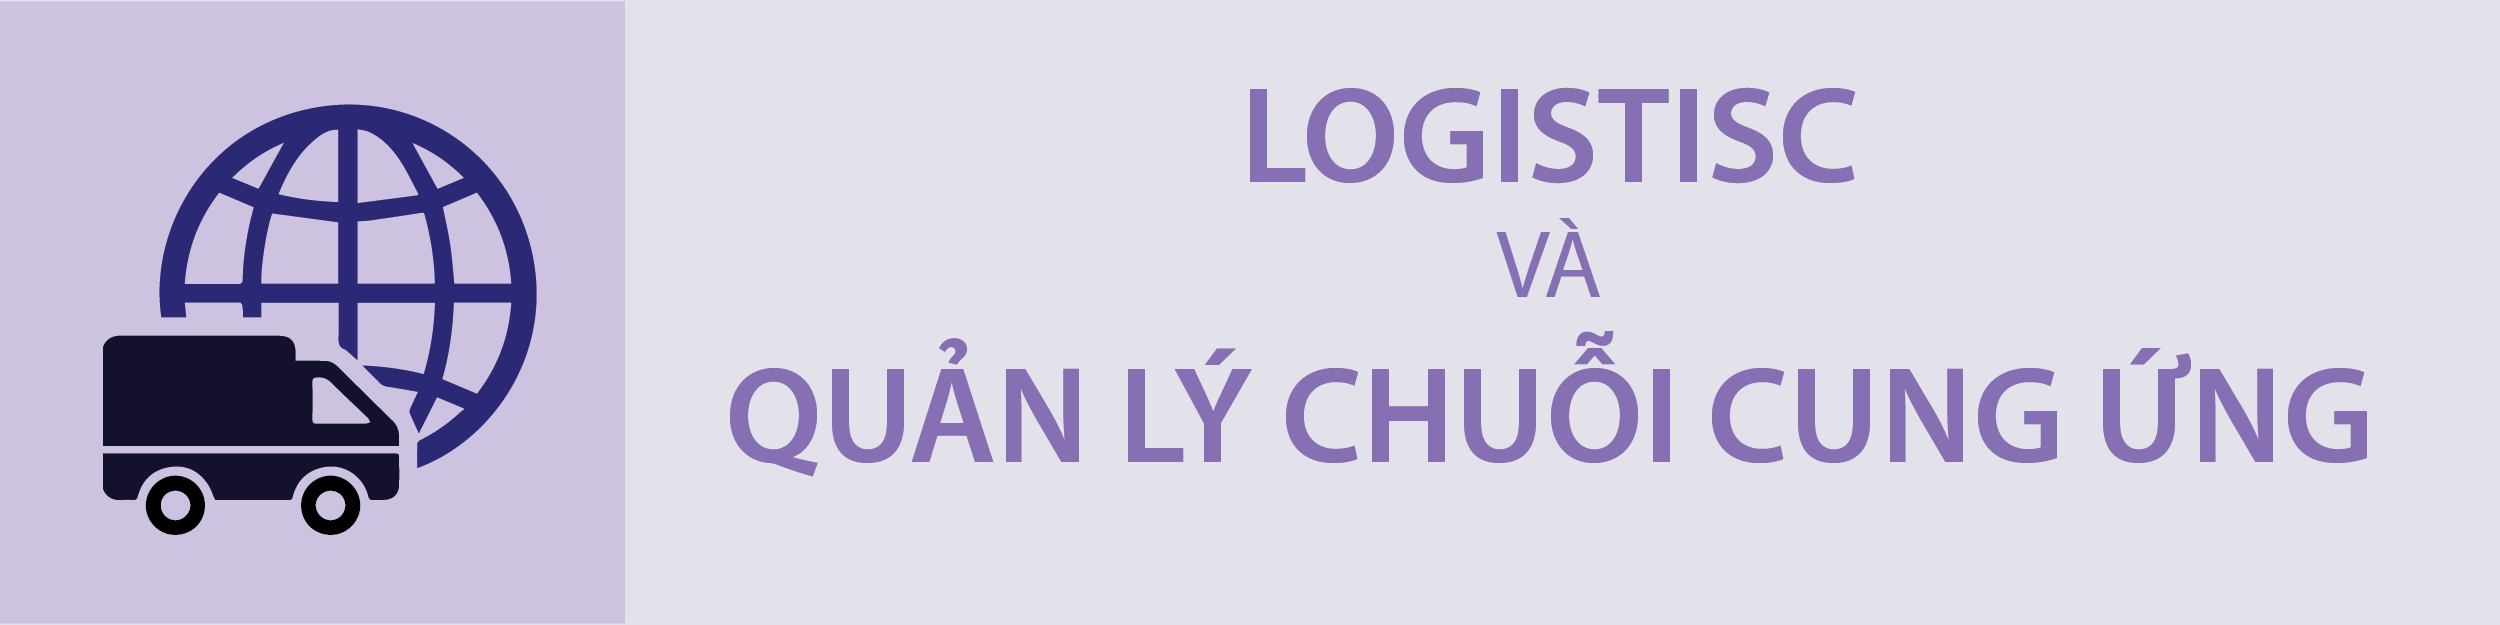 Logistics và Quản lý chuỗi cung ứng